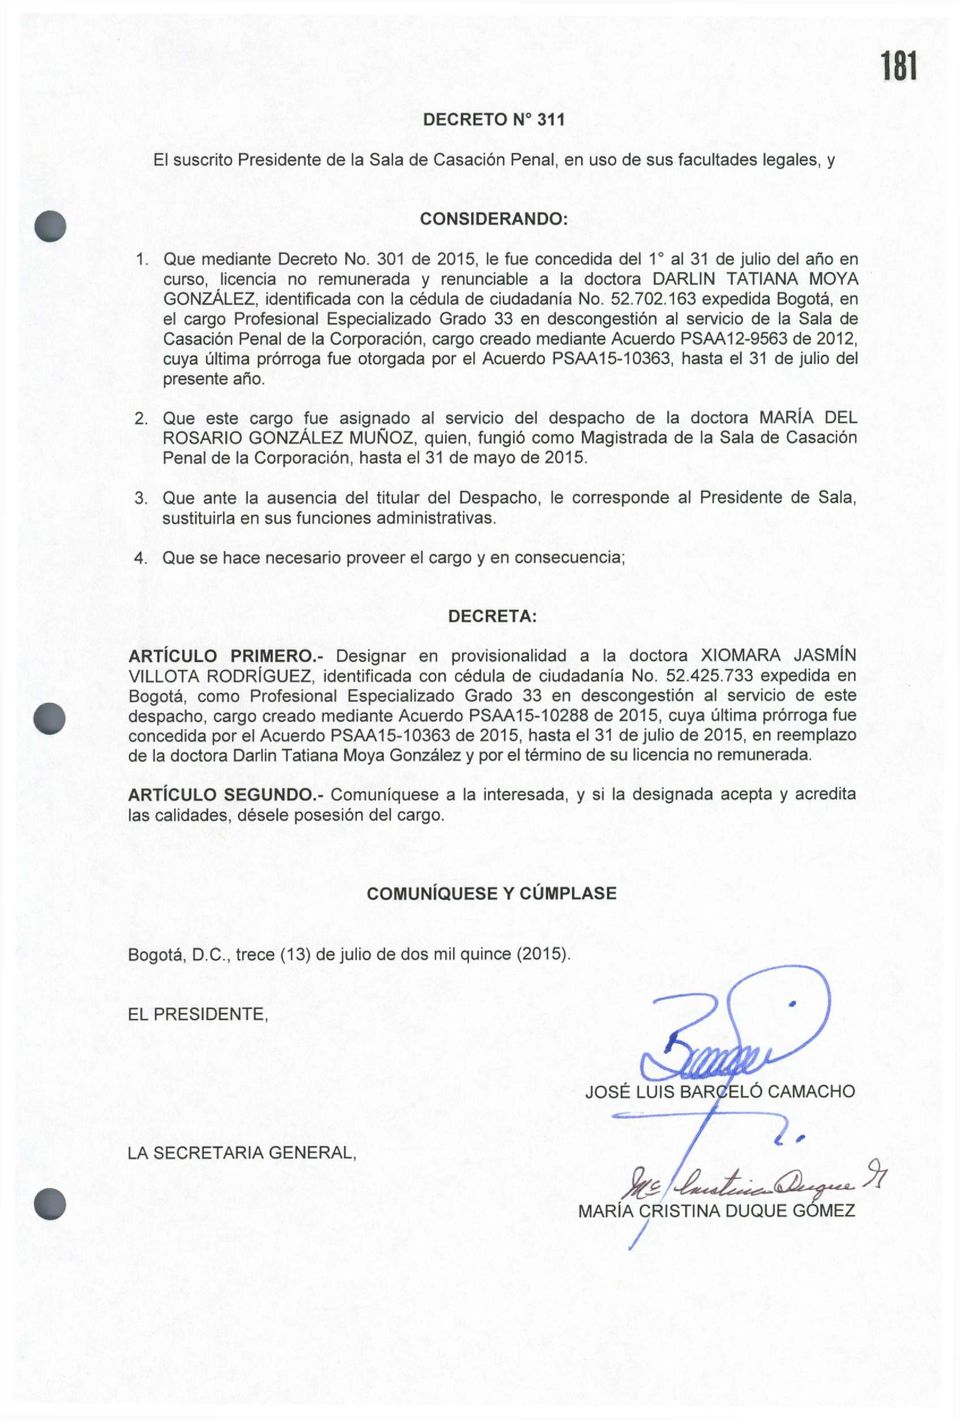 702.163 expedida Bogotá, en el cargo Profesional Especializado Grado 33 en descongestión al servicio de la Sala de Casación Penal de la Corporación, cargo creado mediante Acuerdo PSAA12-9563 de 2012,